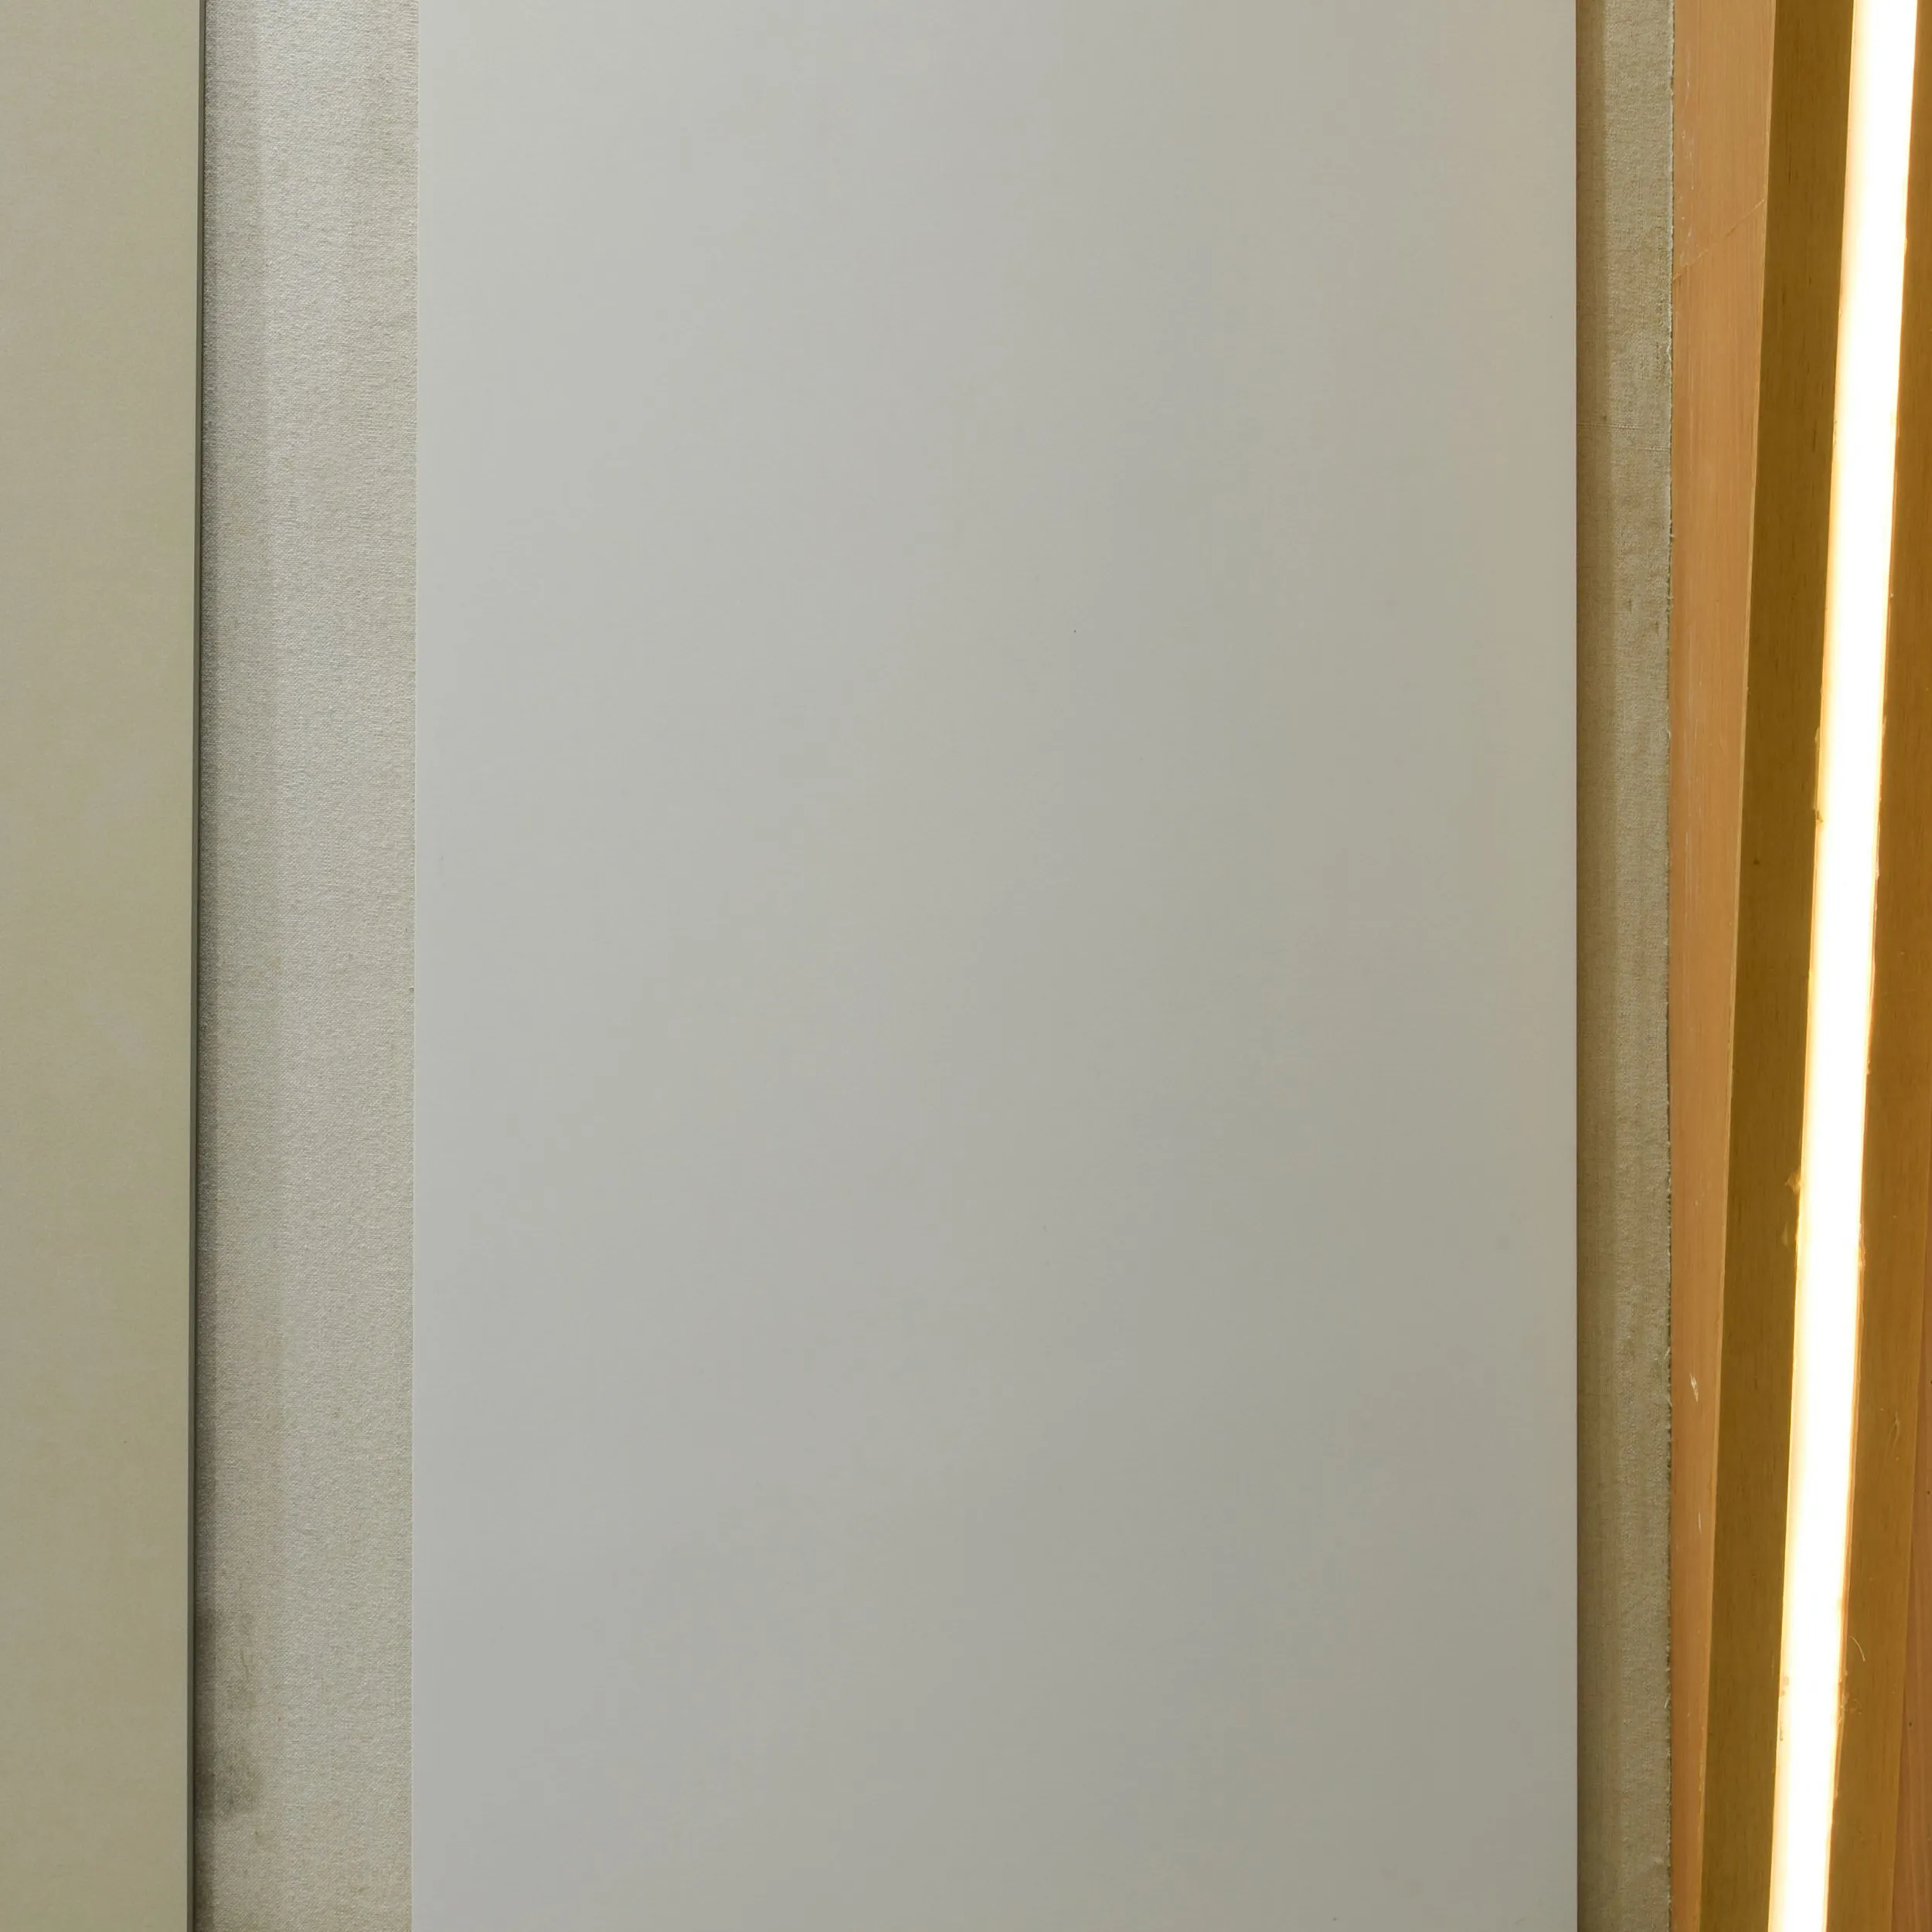 1200x600mm Micro-Cement Dusche Indoor Matte Gres Porzellan Weiß glasierte Fliesen Badezimmer fliesen Design Porzellan fliesen Preis